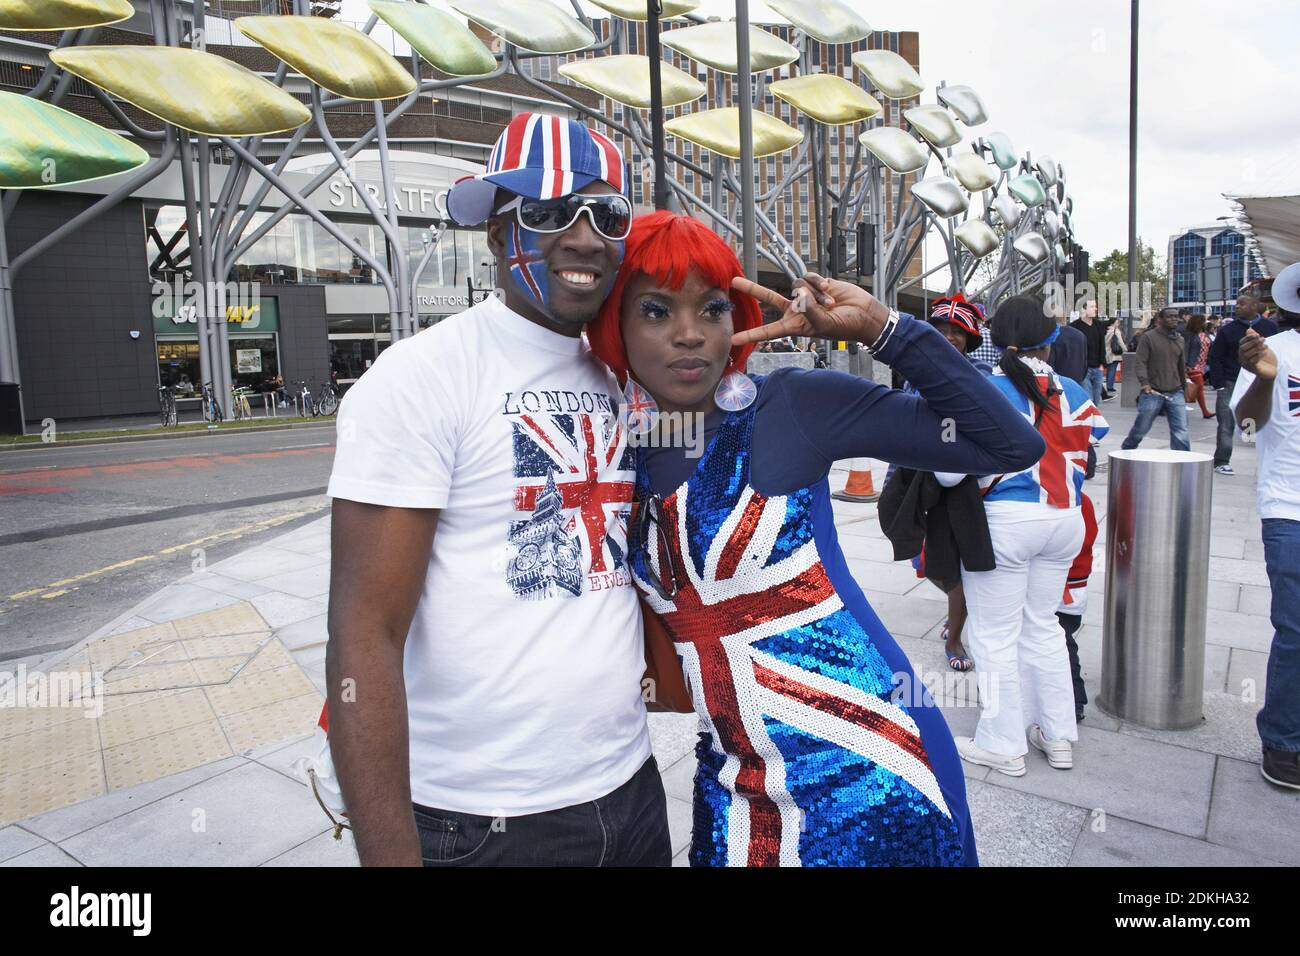 ENGLAND / London / East London / Stratford /Paar in Union Jack Kleid possing in Stratford während des Diamond Jubilee am 4. Juni 2012 in London, eng Stockfoto